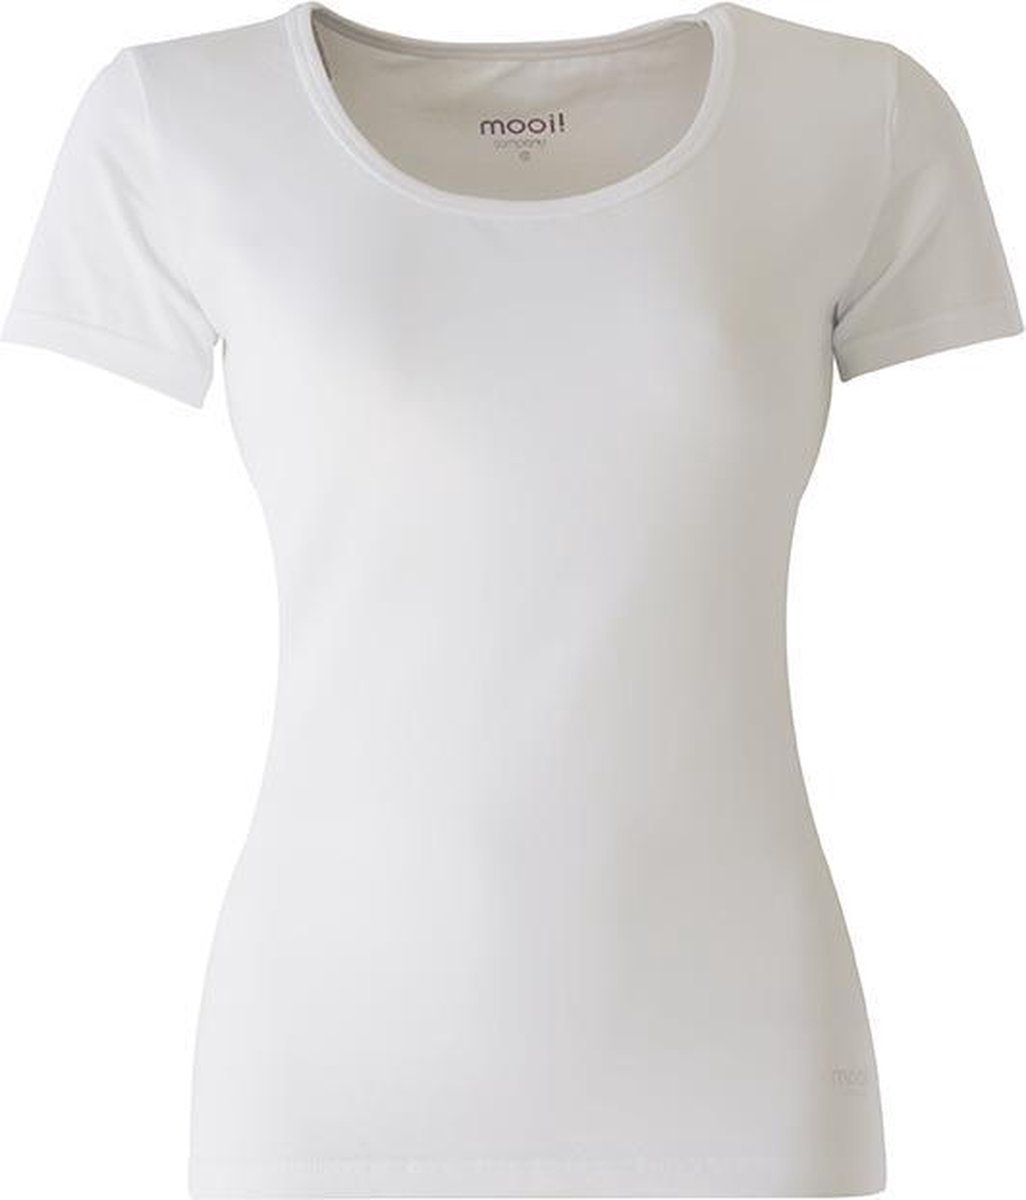 MOOI! Company - Dames T-shirt Daisy - Korte mouw - Aansluitend model - Kleur Wit - XS